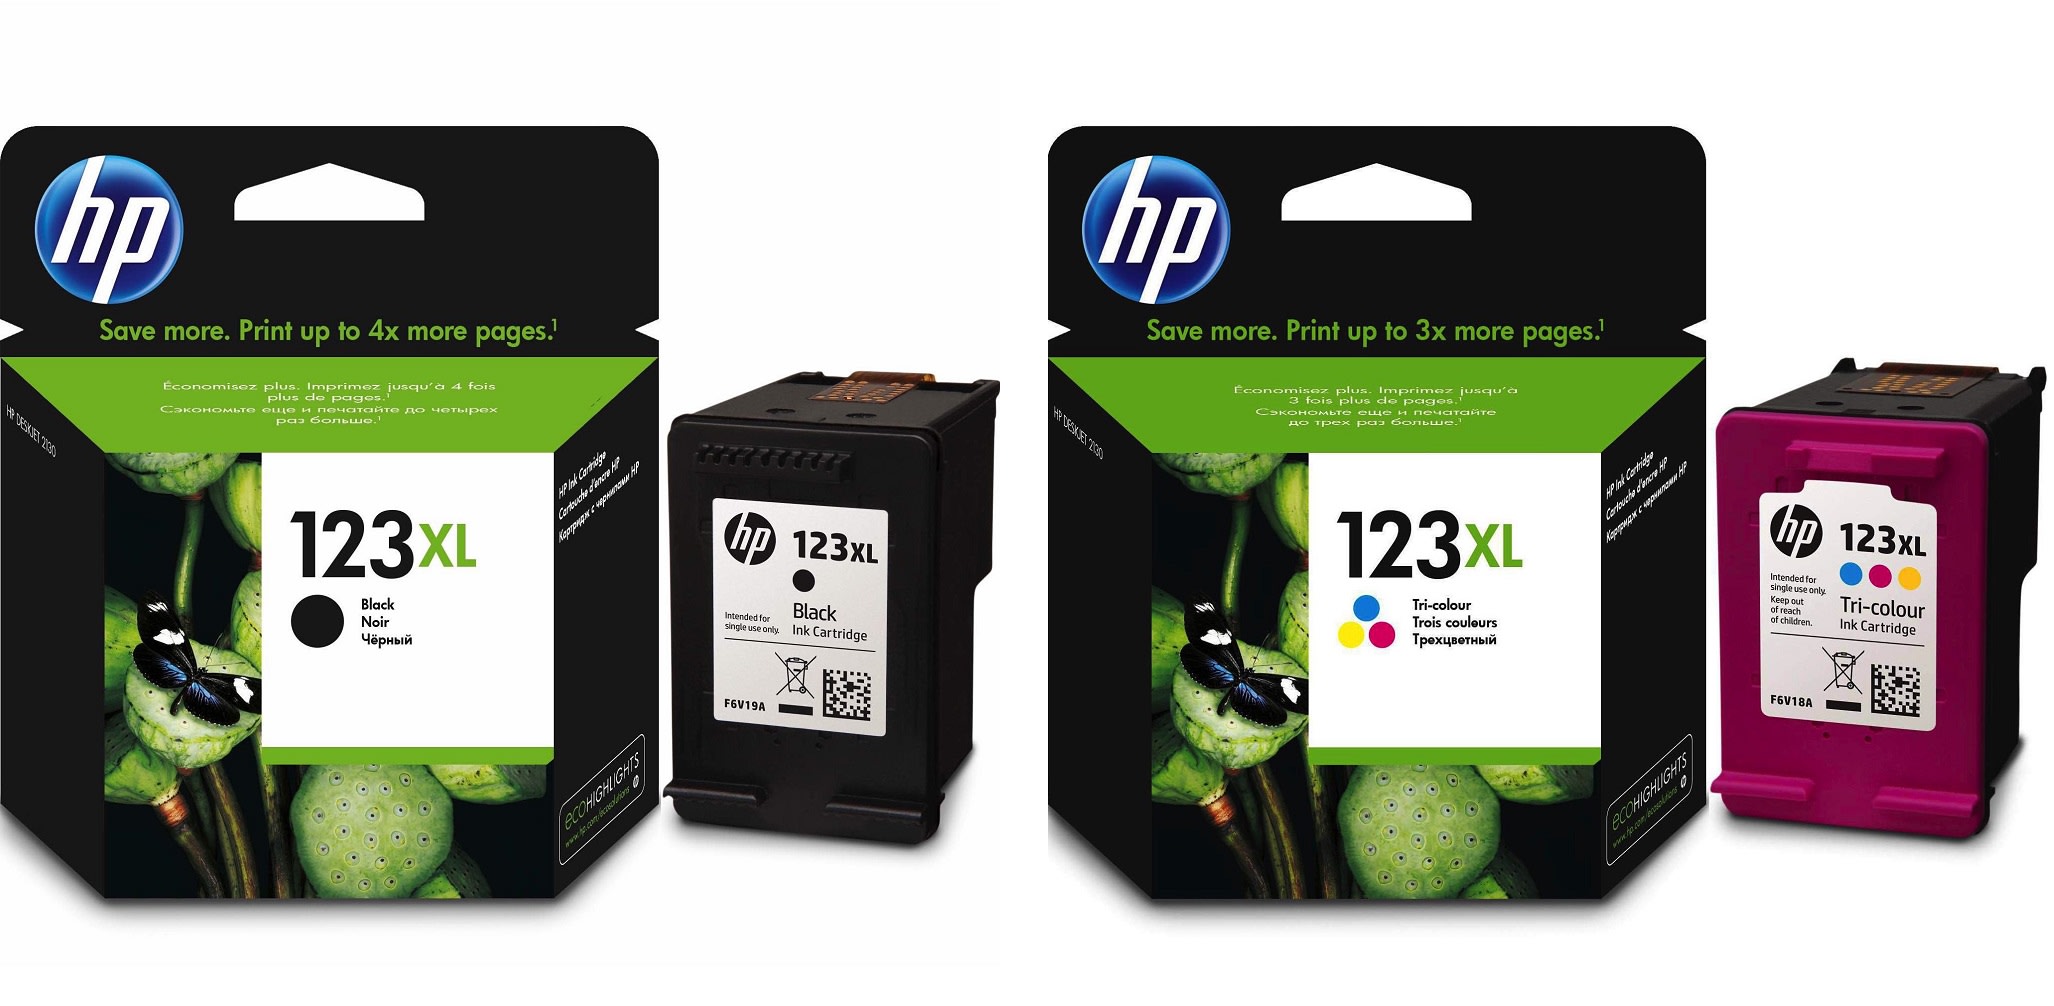 Картриджи hp 123XL для HP DJ 2630. Купить комплект оригинальных чернил.